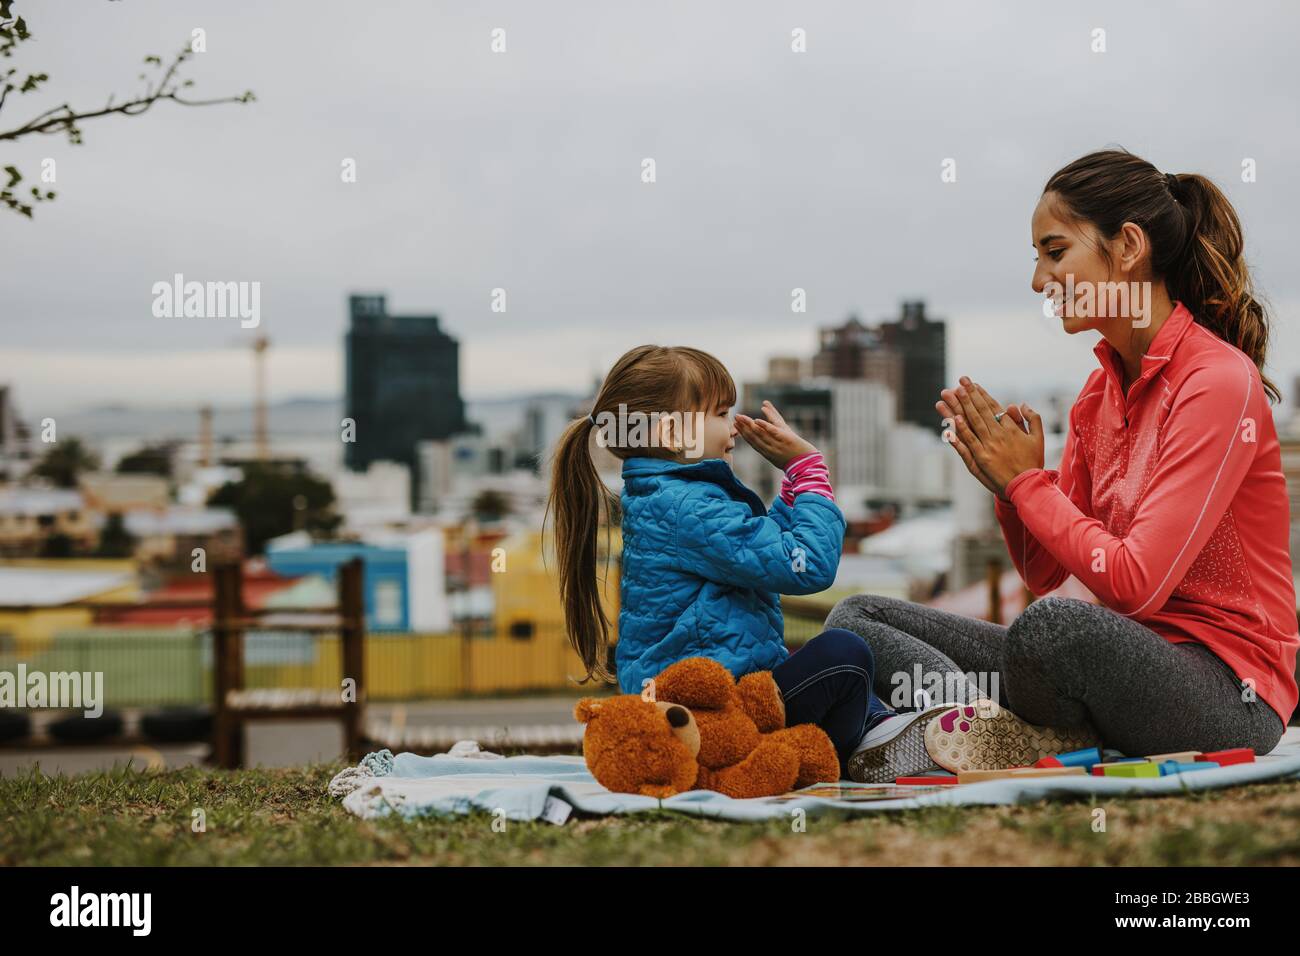 Seitenansicht einer fröhlichen lächelnden Frau und eines Mädchen-Kindes, das beim Sitzen in einem Park Patty-Kuchen-Spiel spielt. Kleines Mädchen spielt Klatschspiel mit ihrem Kindermädchen ou Stockfoto